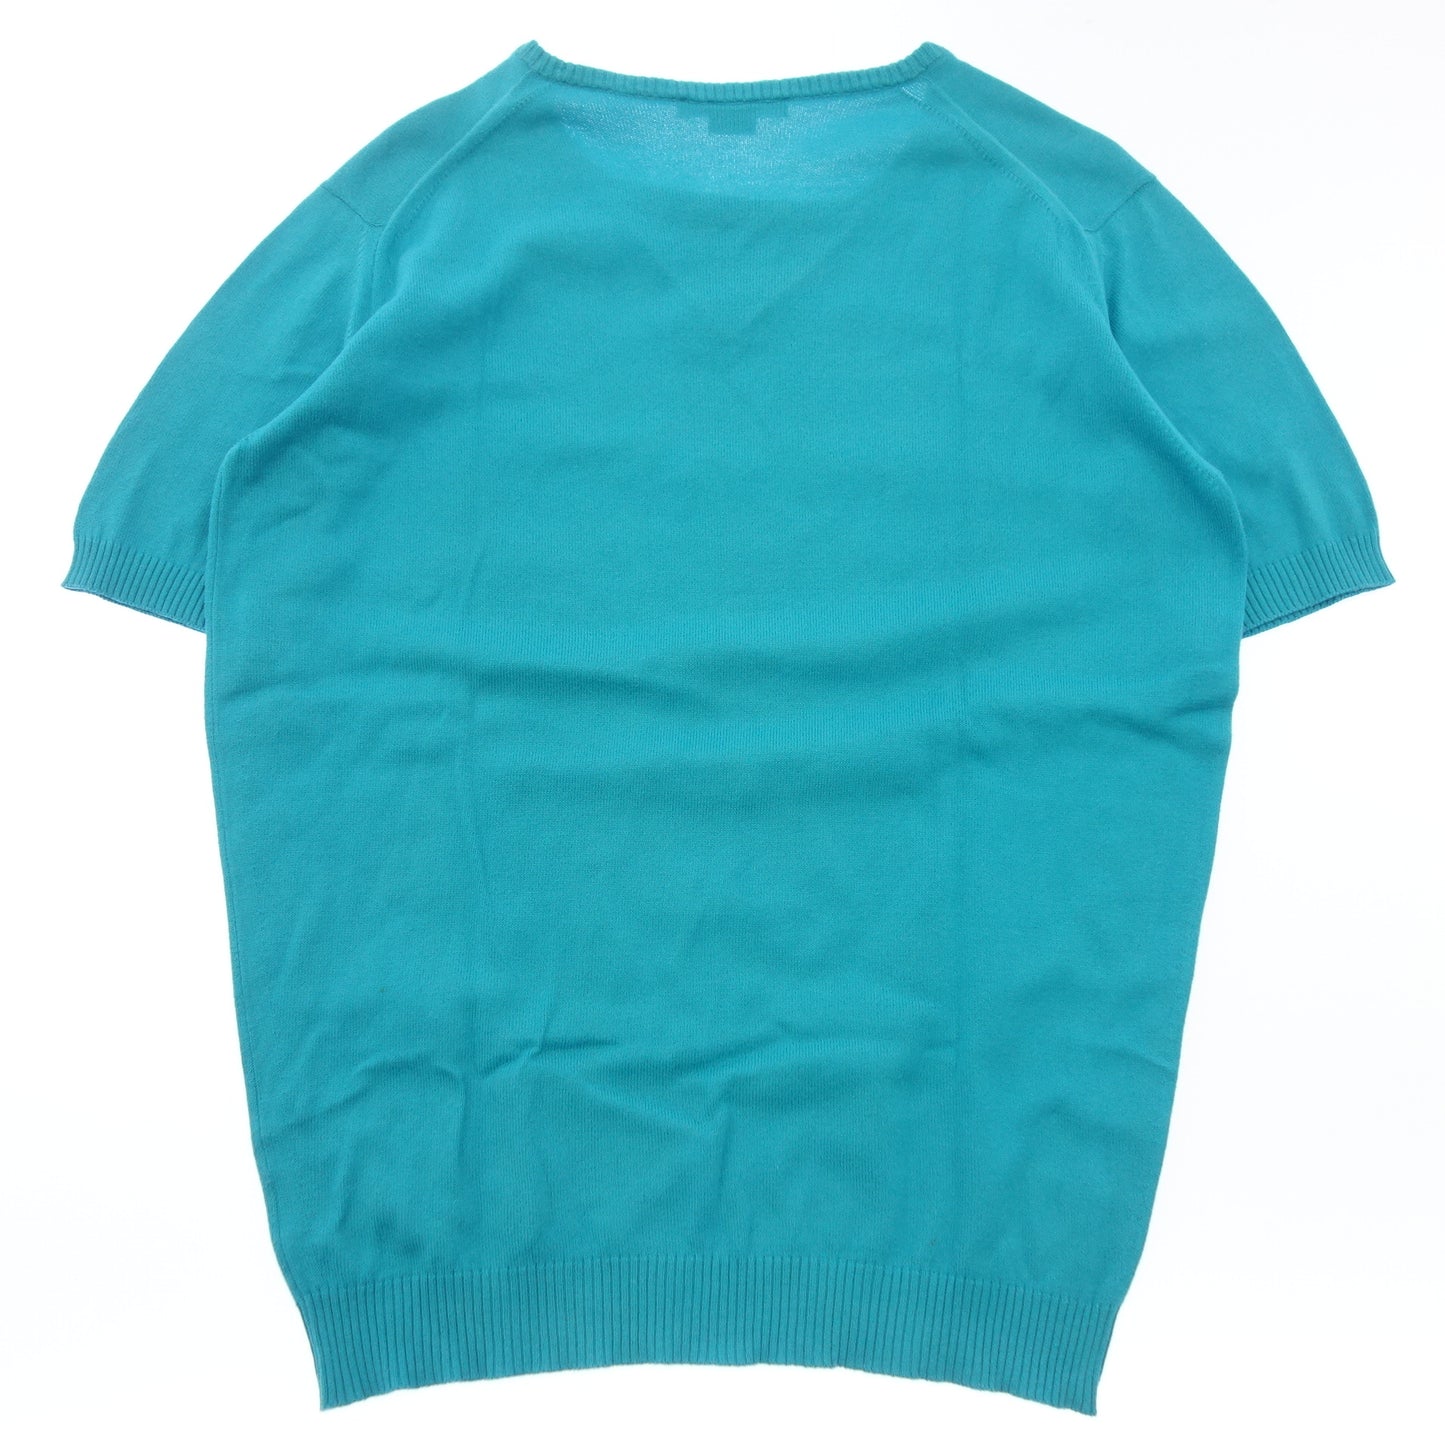 Used JOHN SMEDLEY short sleeve T-shirt size S men's turquoise blue JOHN SMEDLEY [AFB41] 